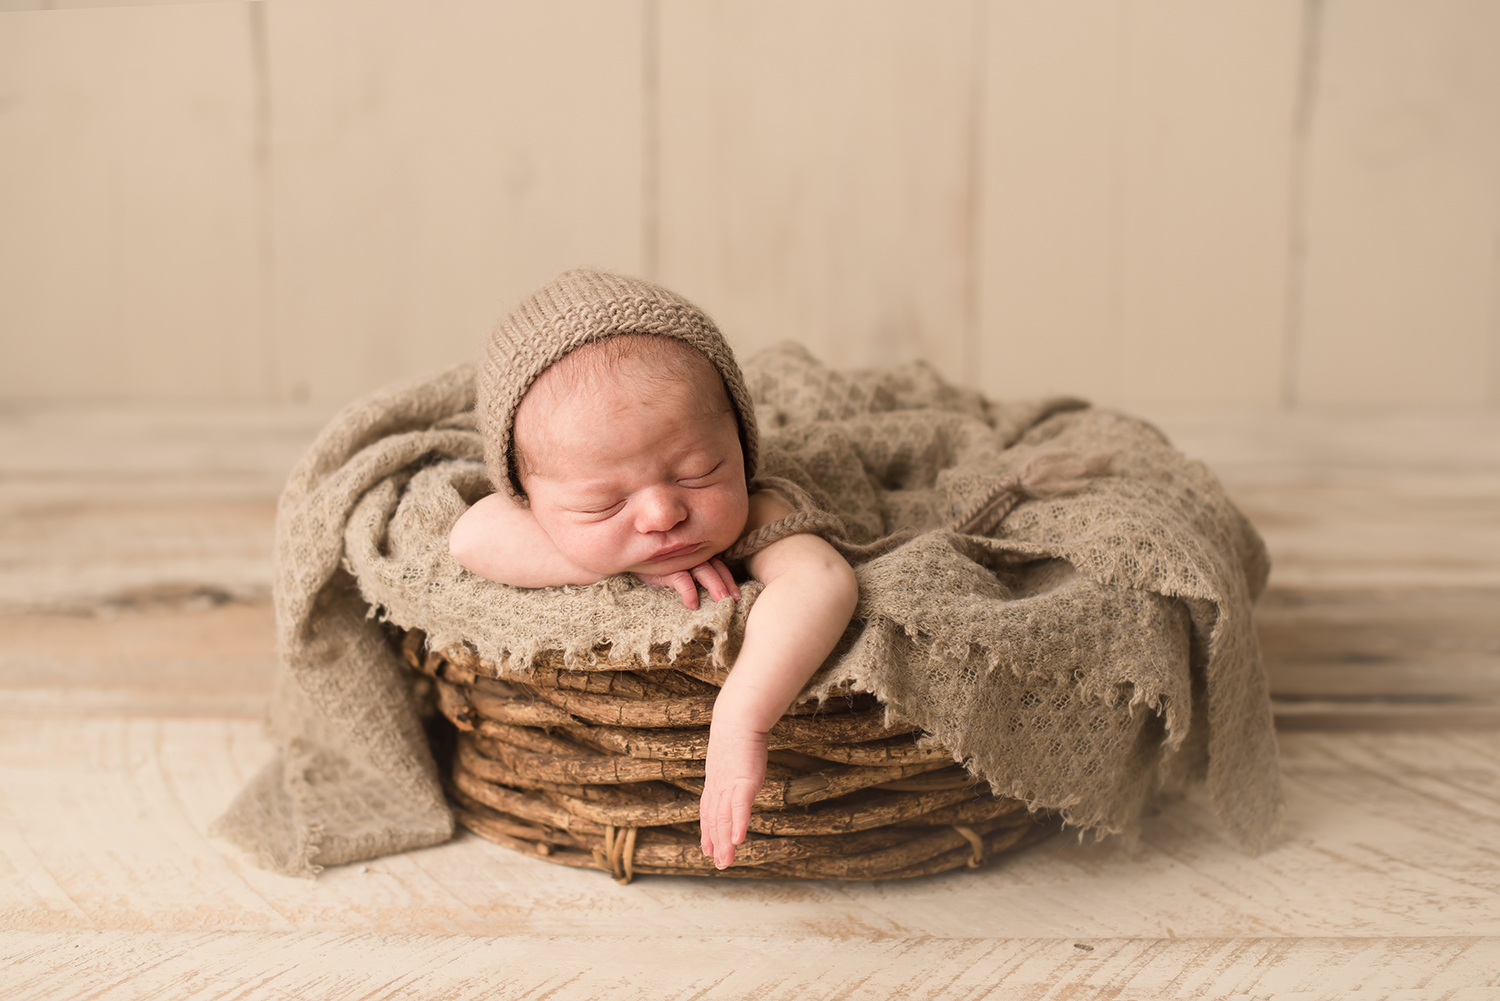 columbus-ohio-newborn-photographer-bare-baby-photography.jpg